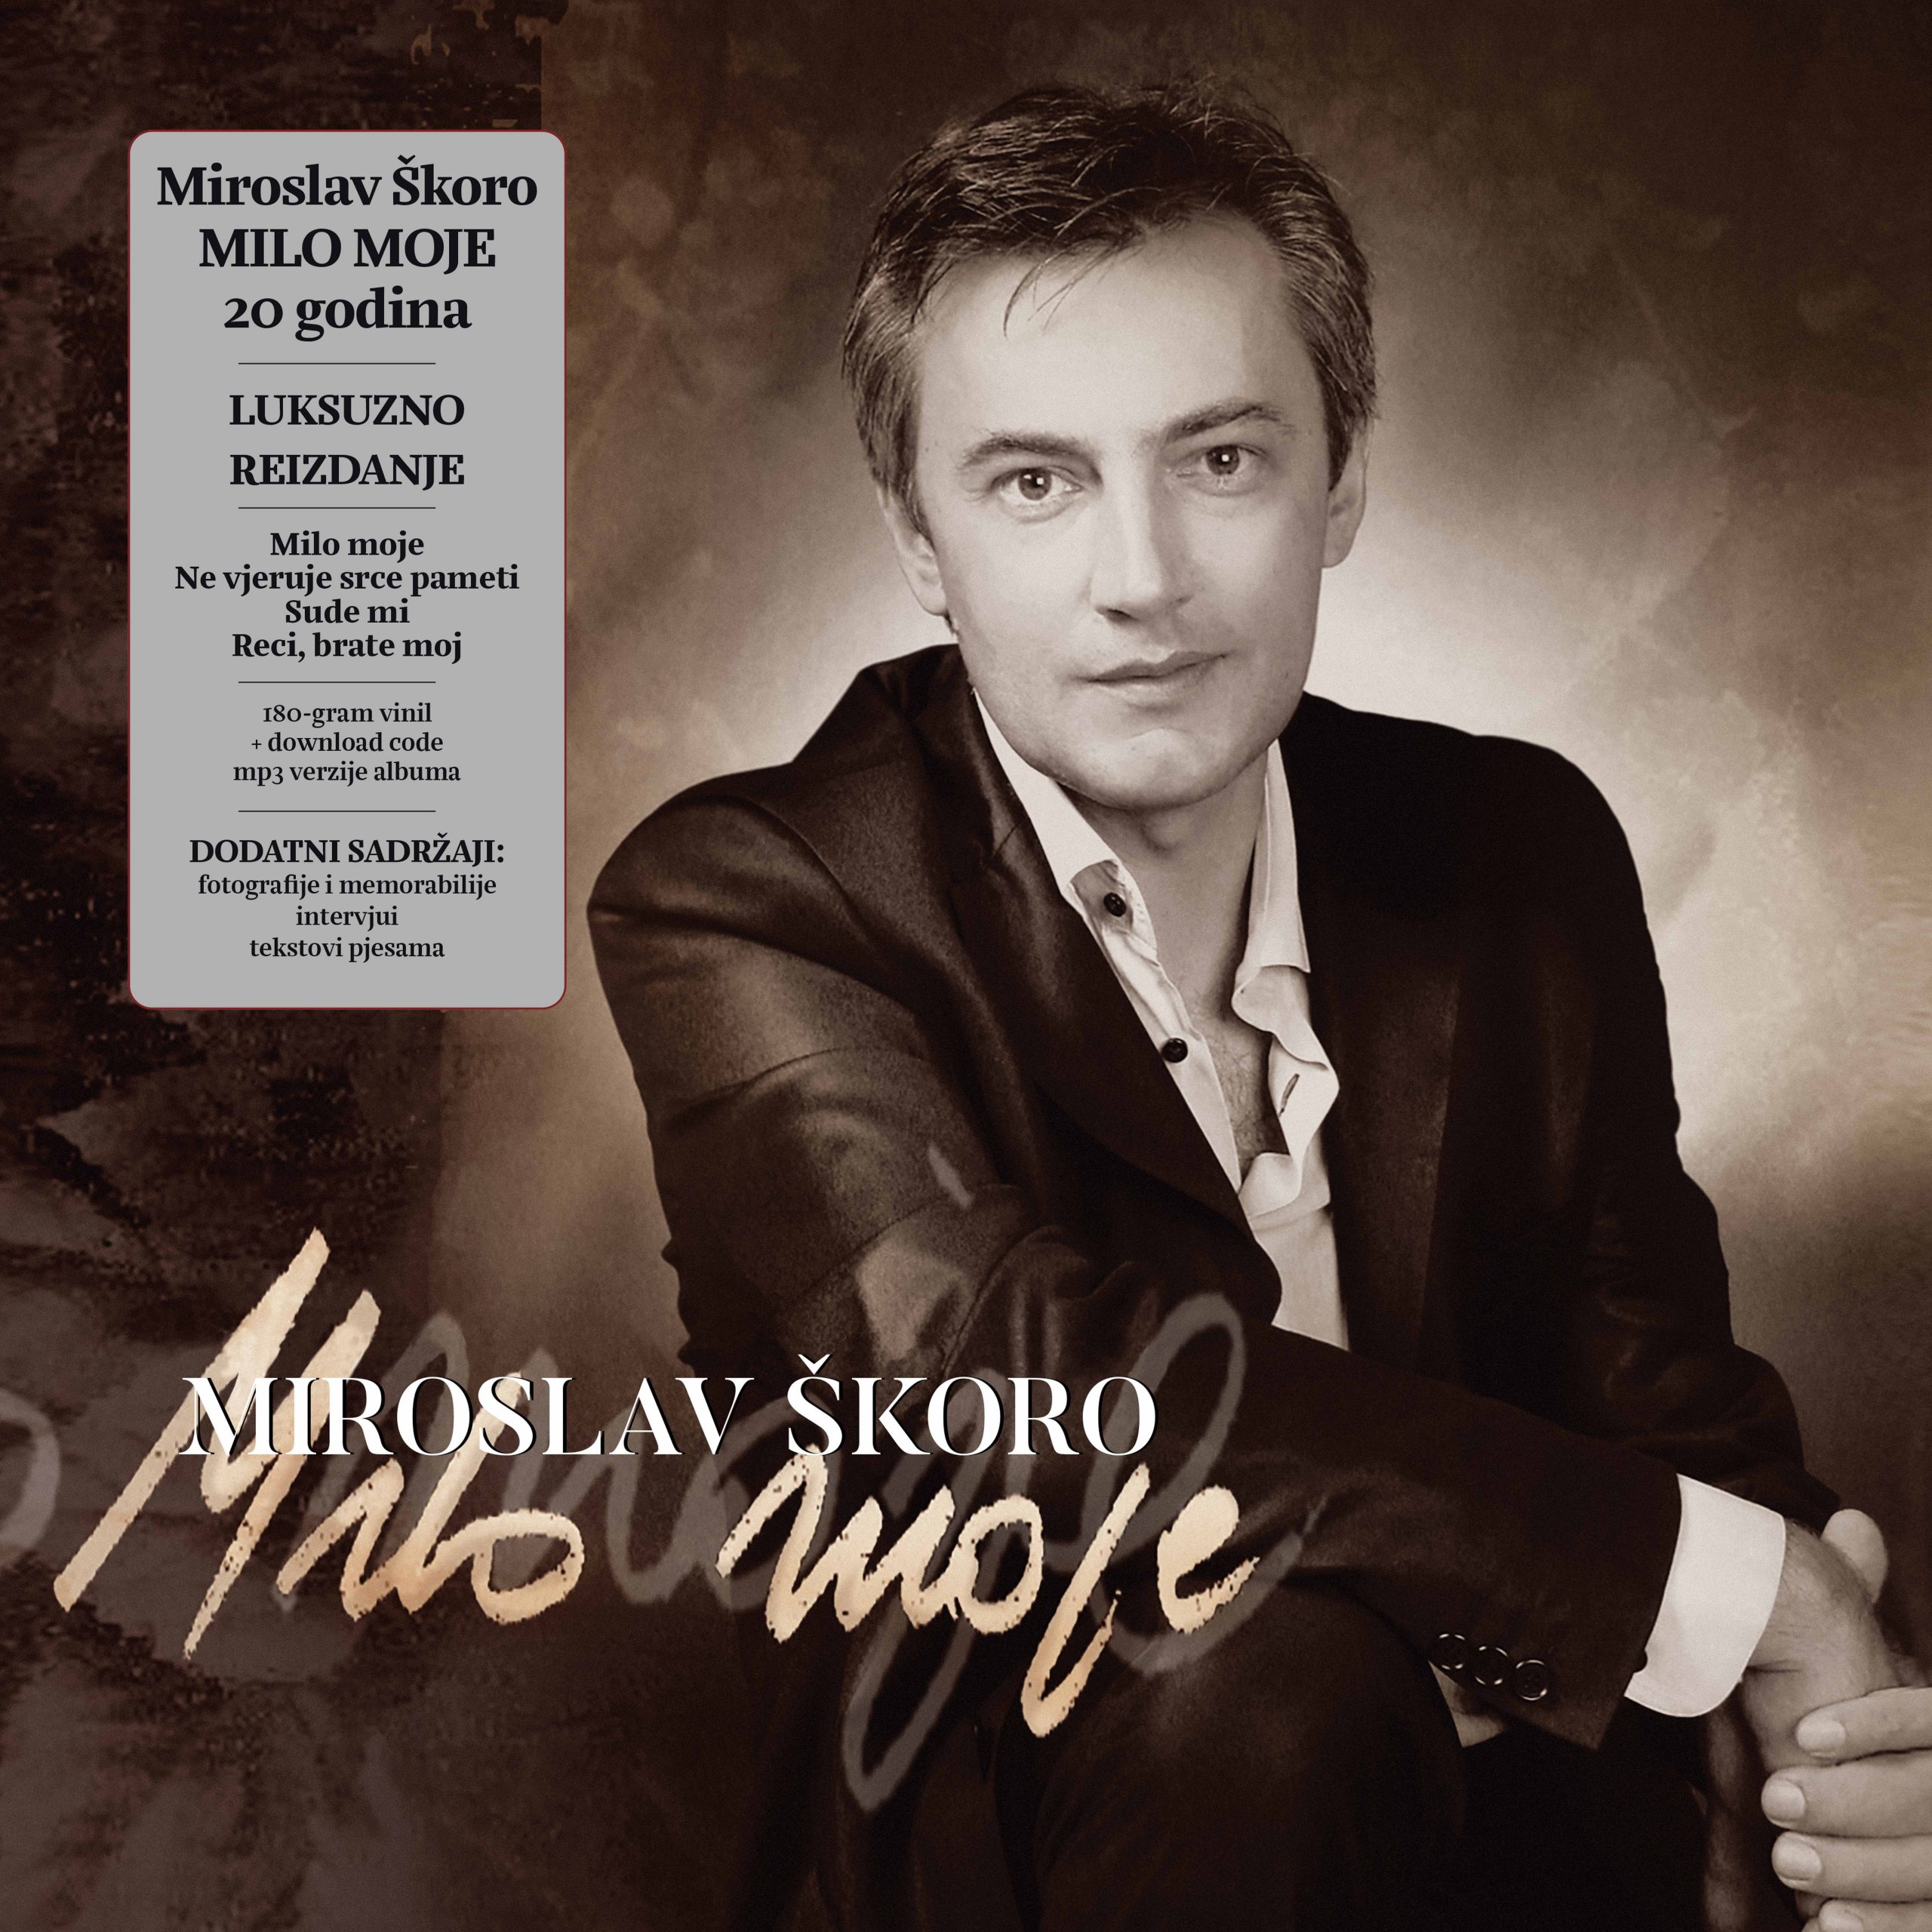 Legendarni album “Milo moje” Miroslava Škore od danas na LP-u!